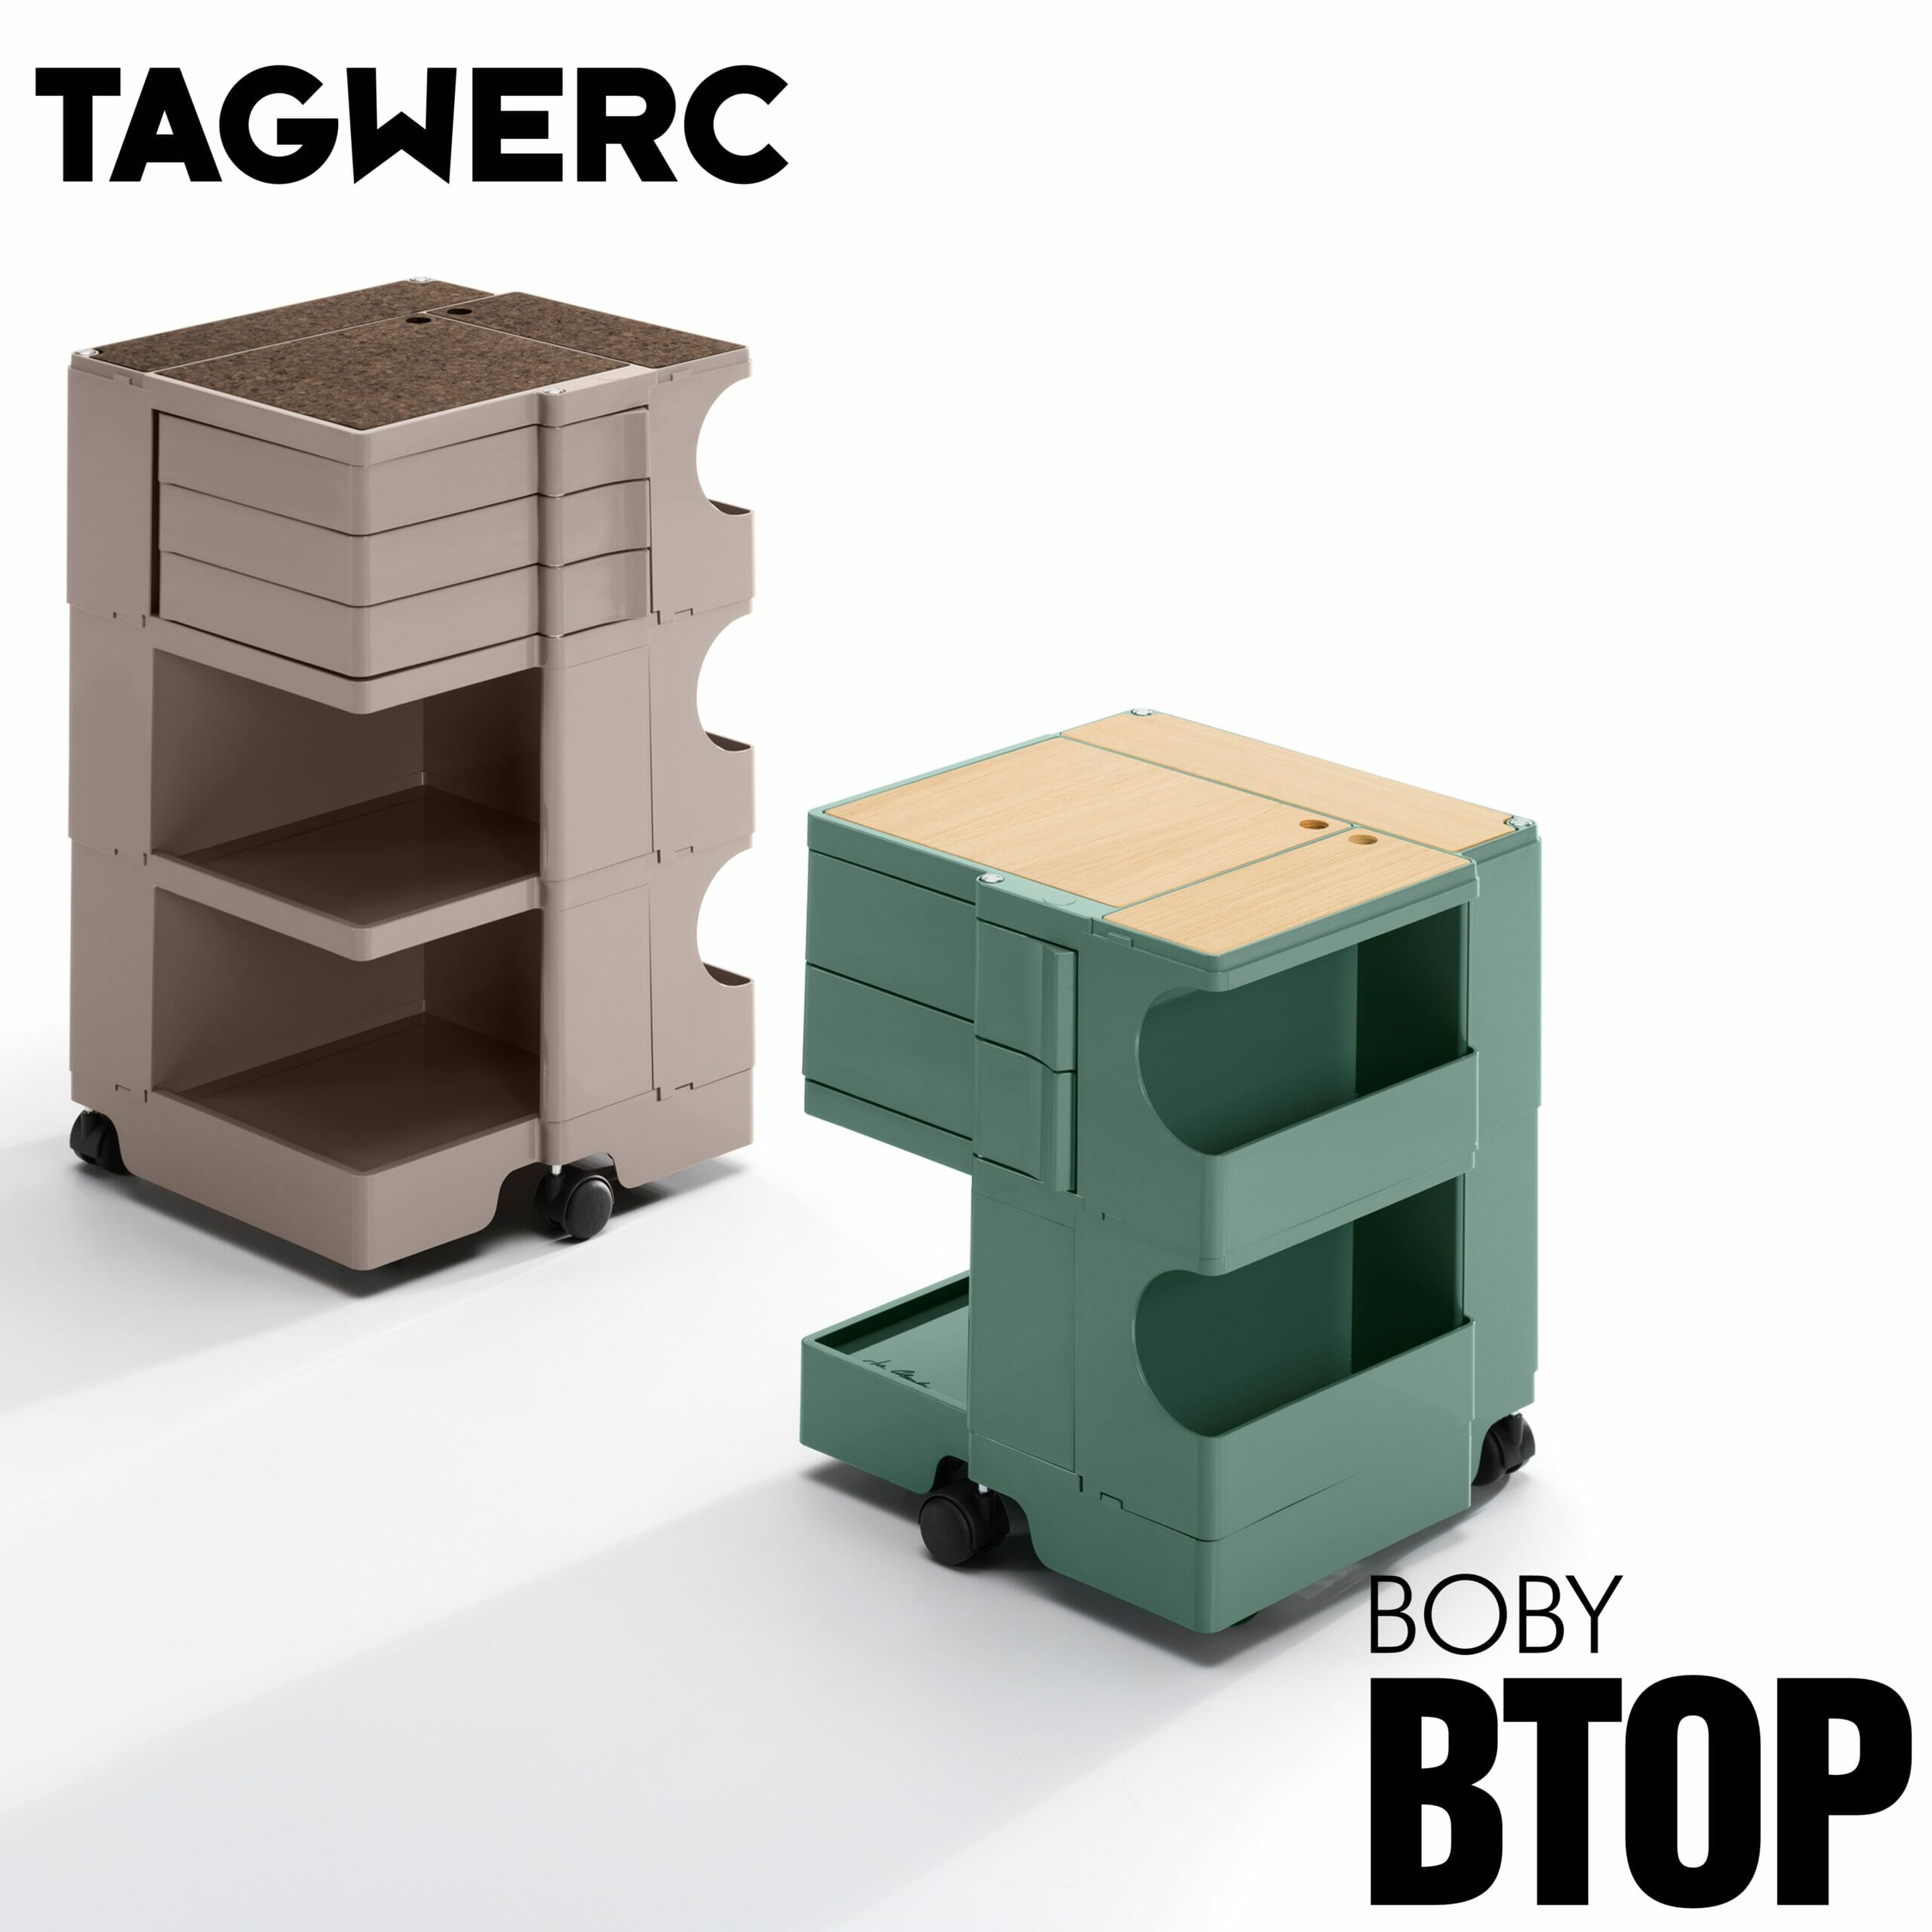 BTOP Eiche Natur Auflage für Rollcontainer - Boby B—Line